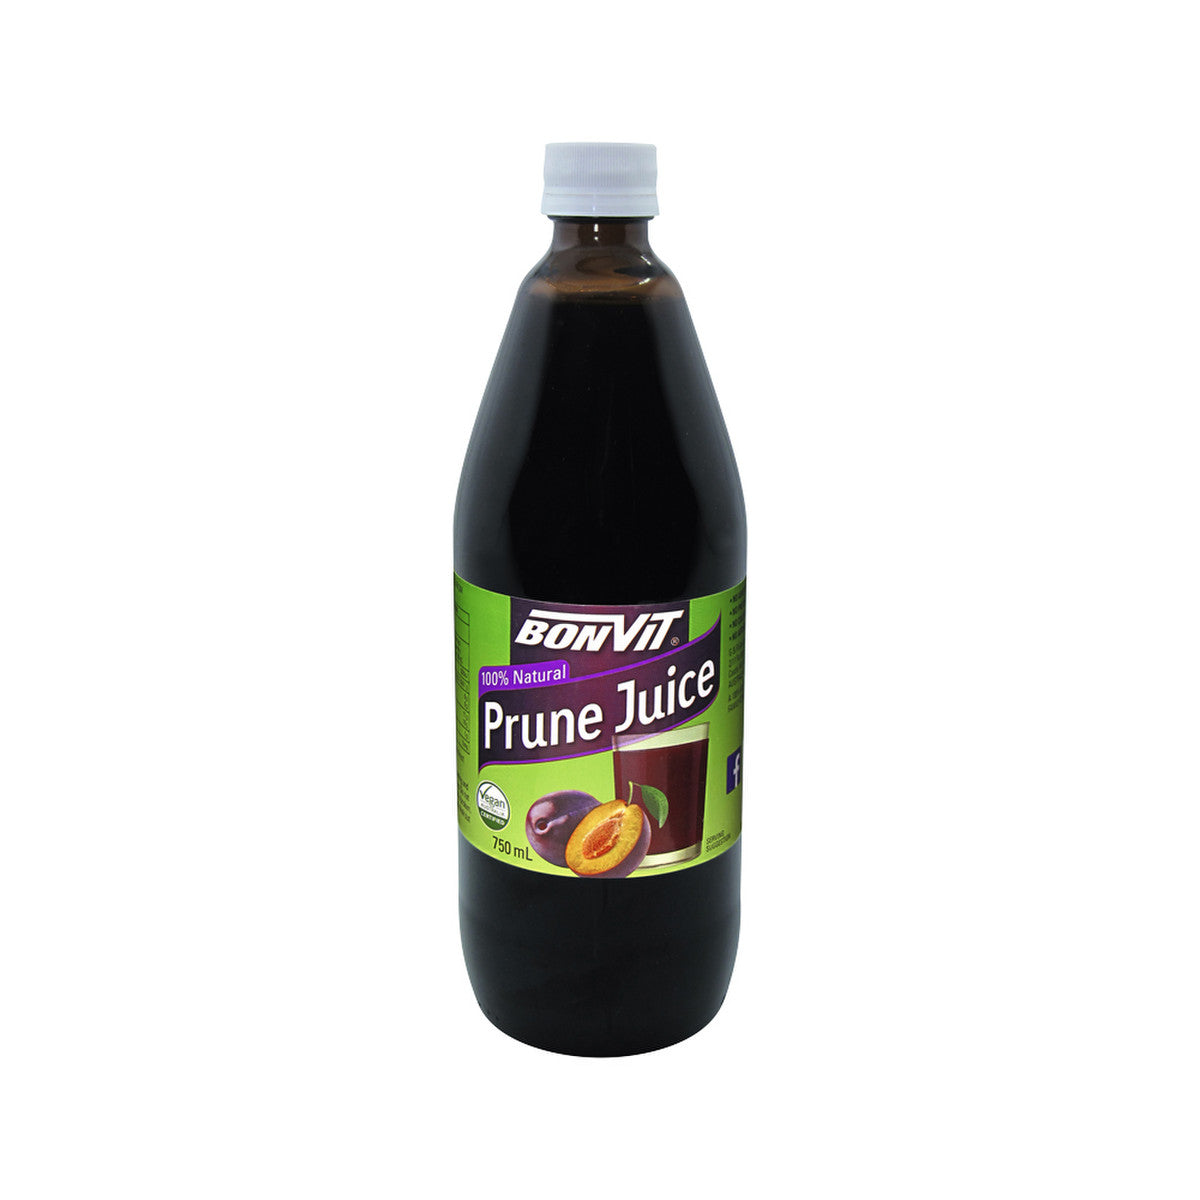 Bonvit - Prune Juice